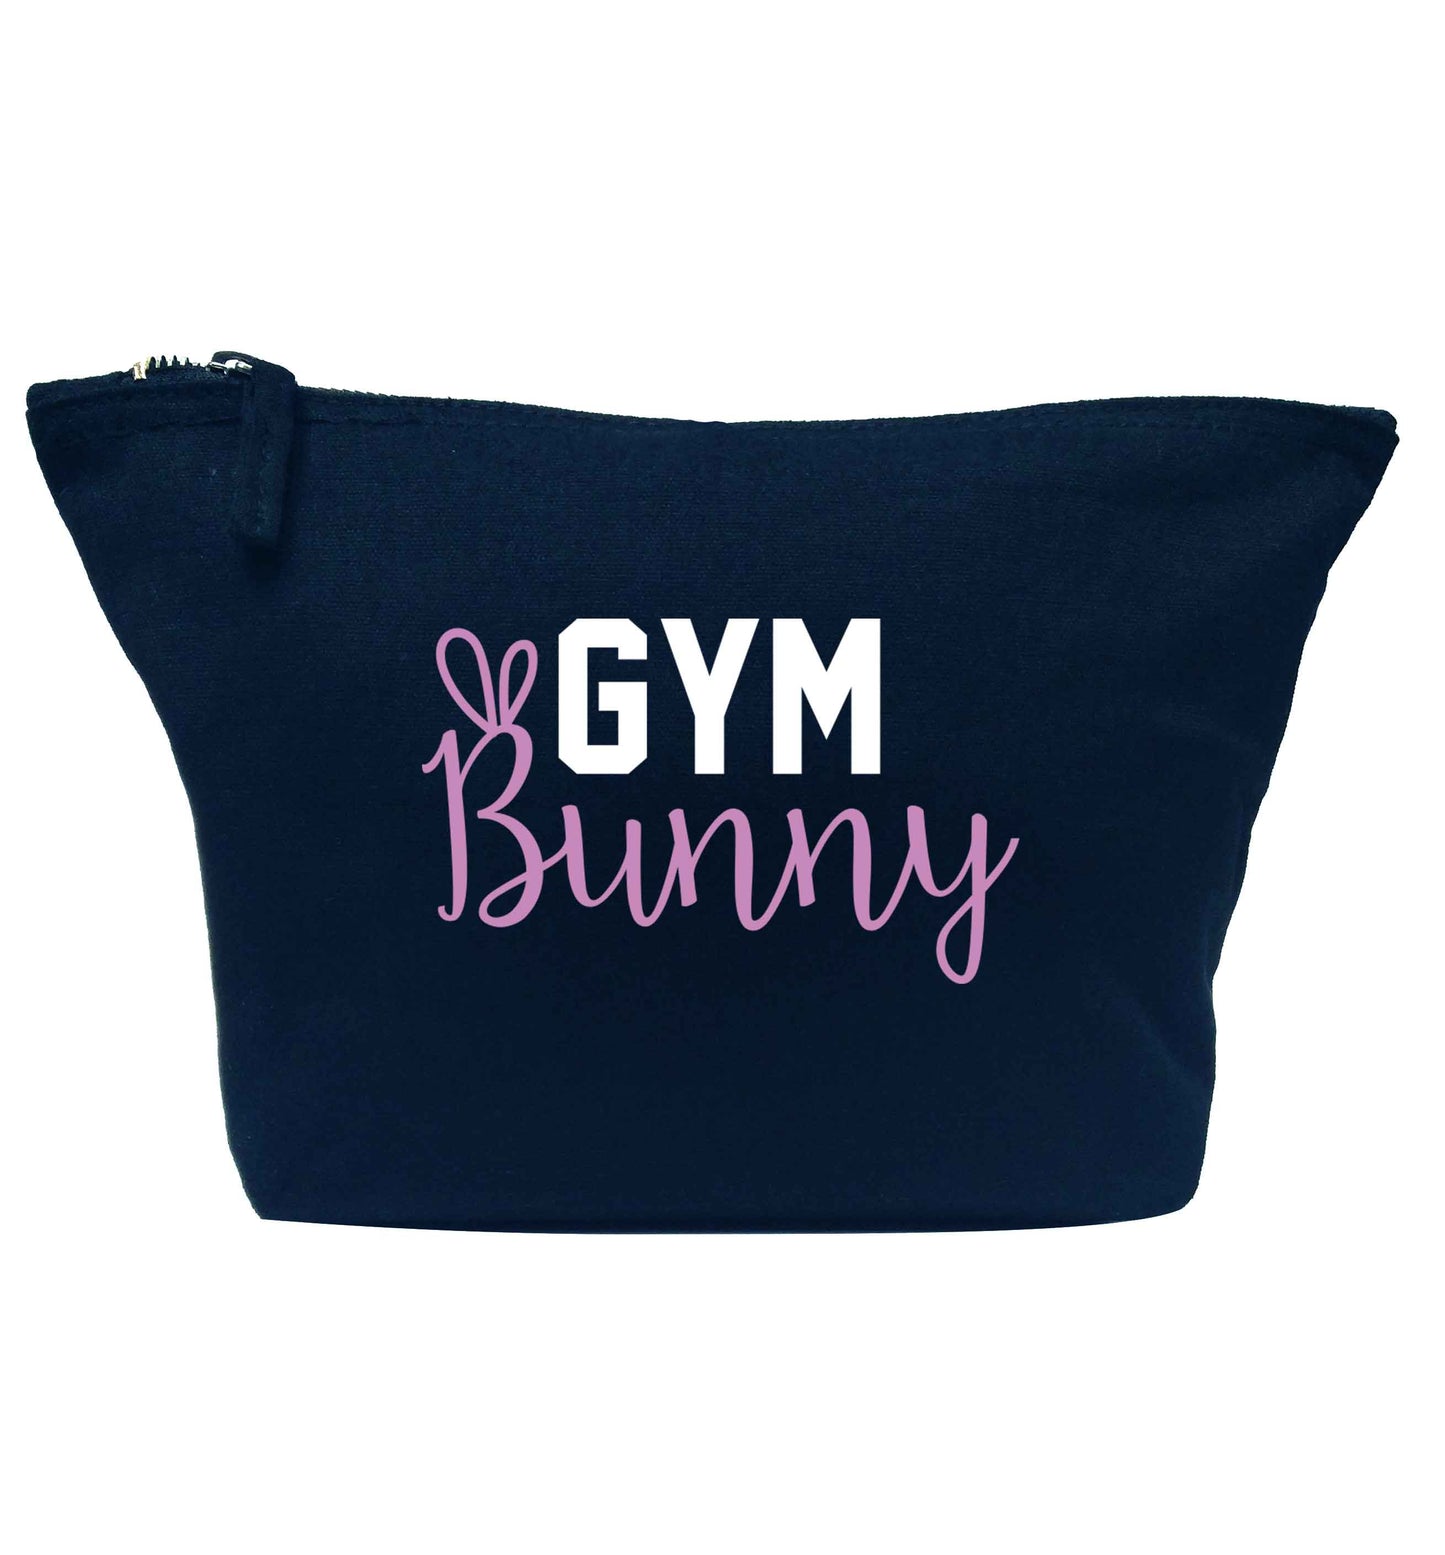 gym bunny navy makeup bag